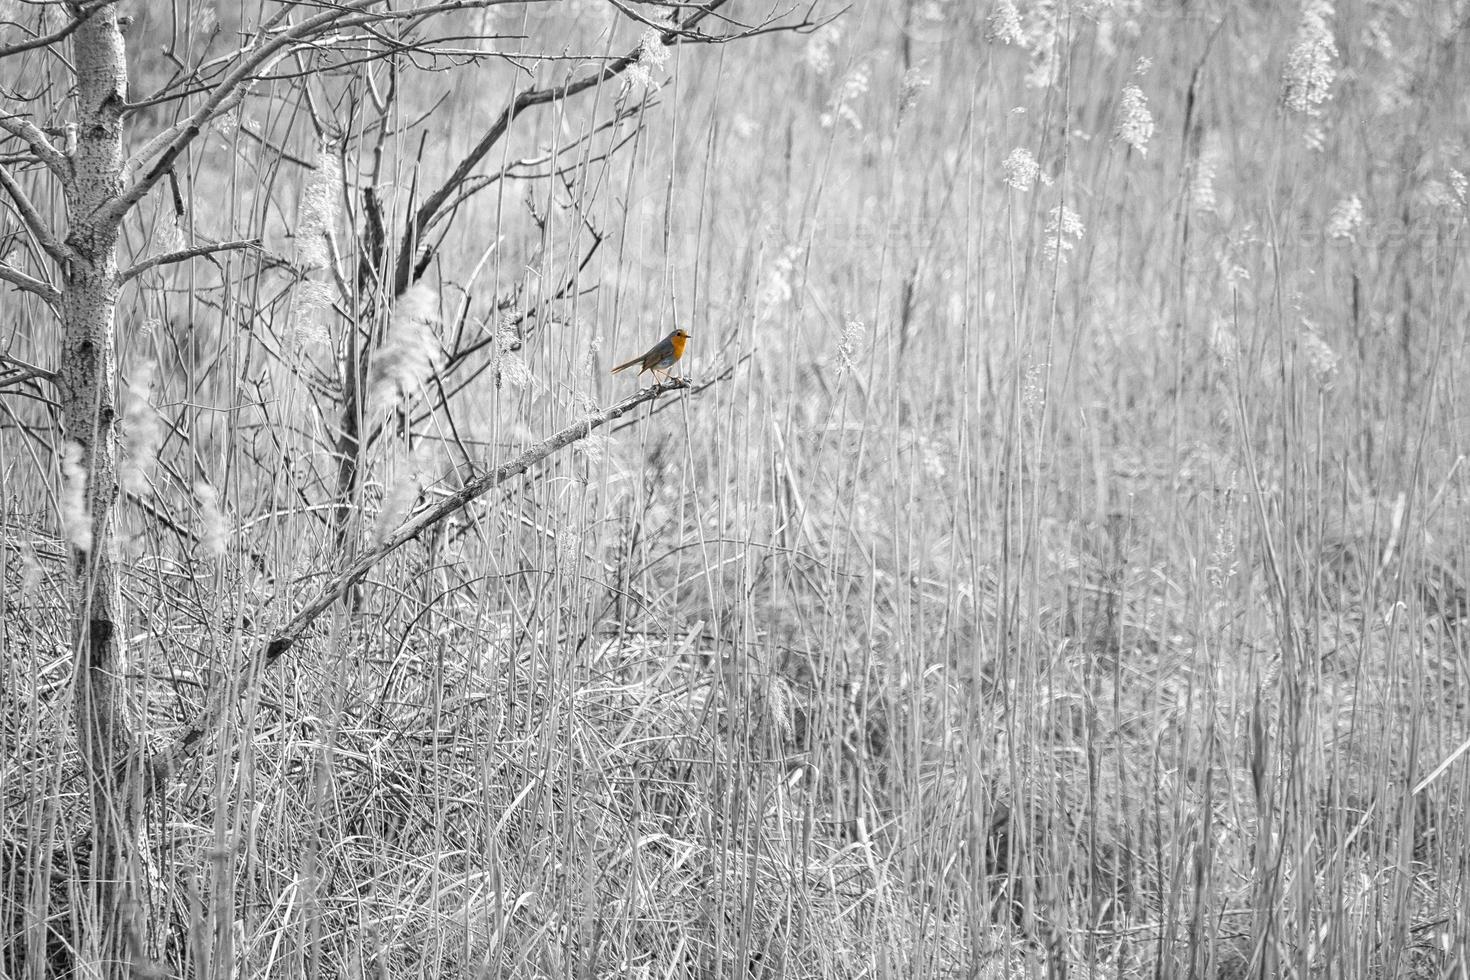 pettirosso su un ramo nel parco nazionale darss. piumaggio colorato del piccolo uccello canoro. foto